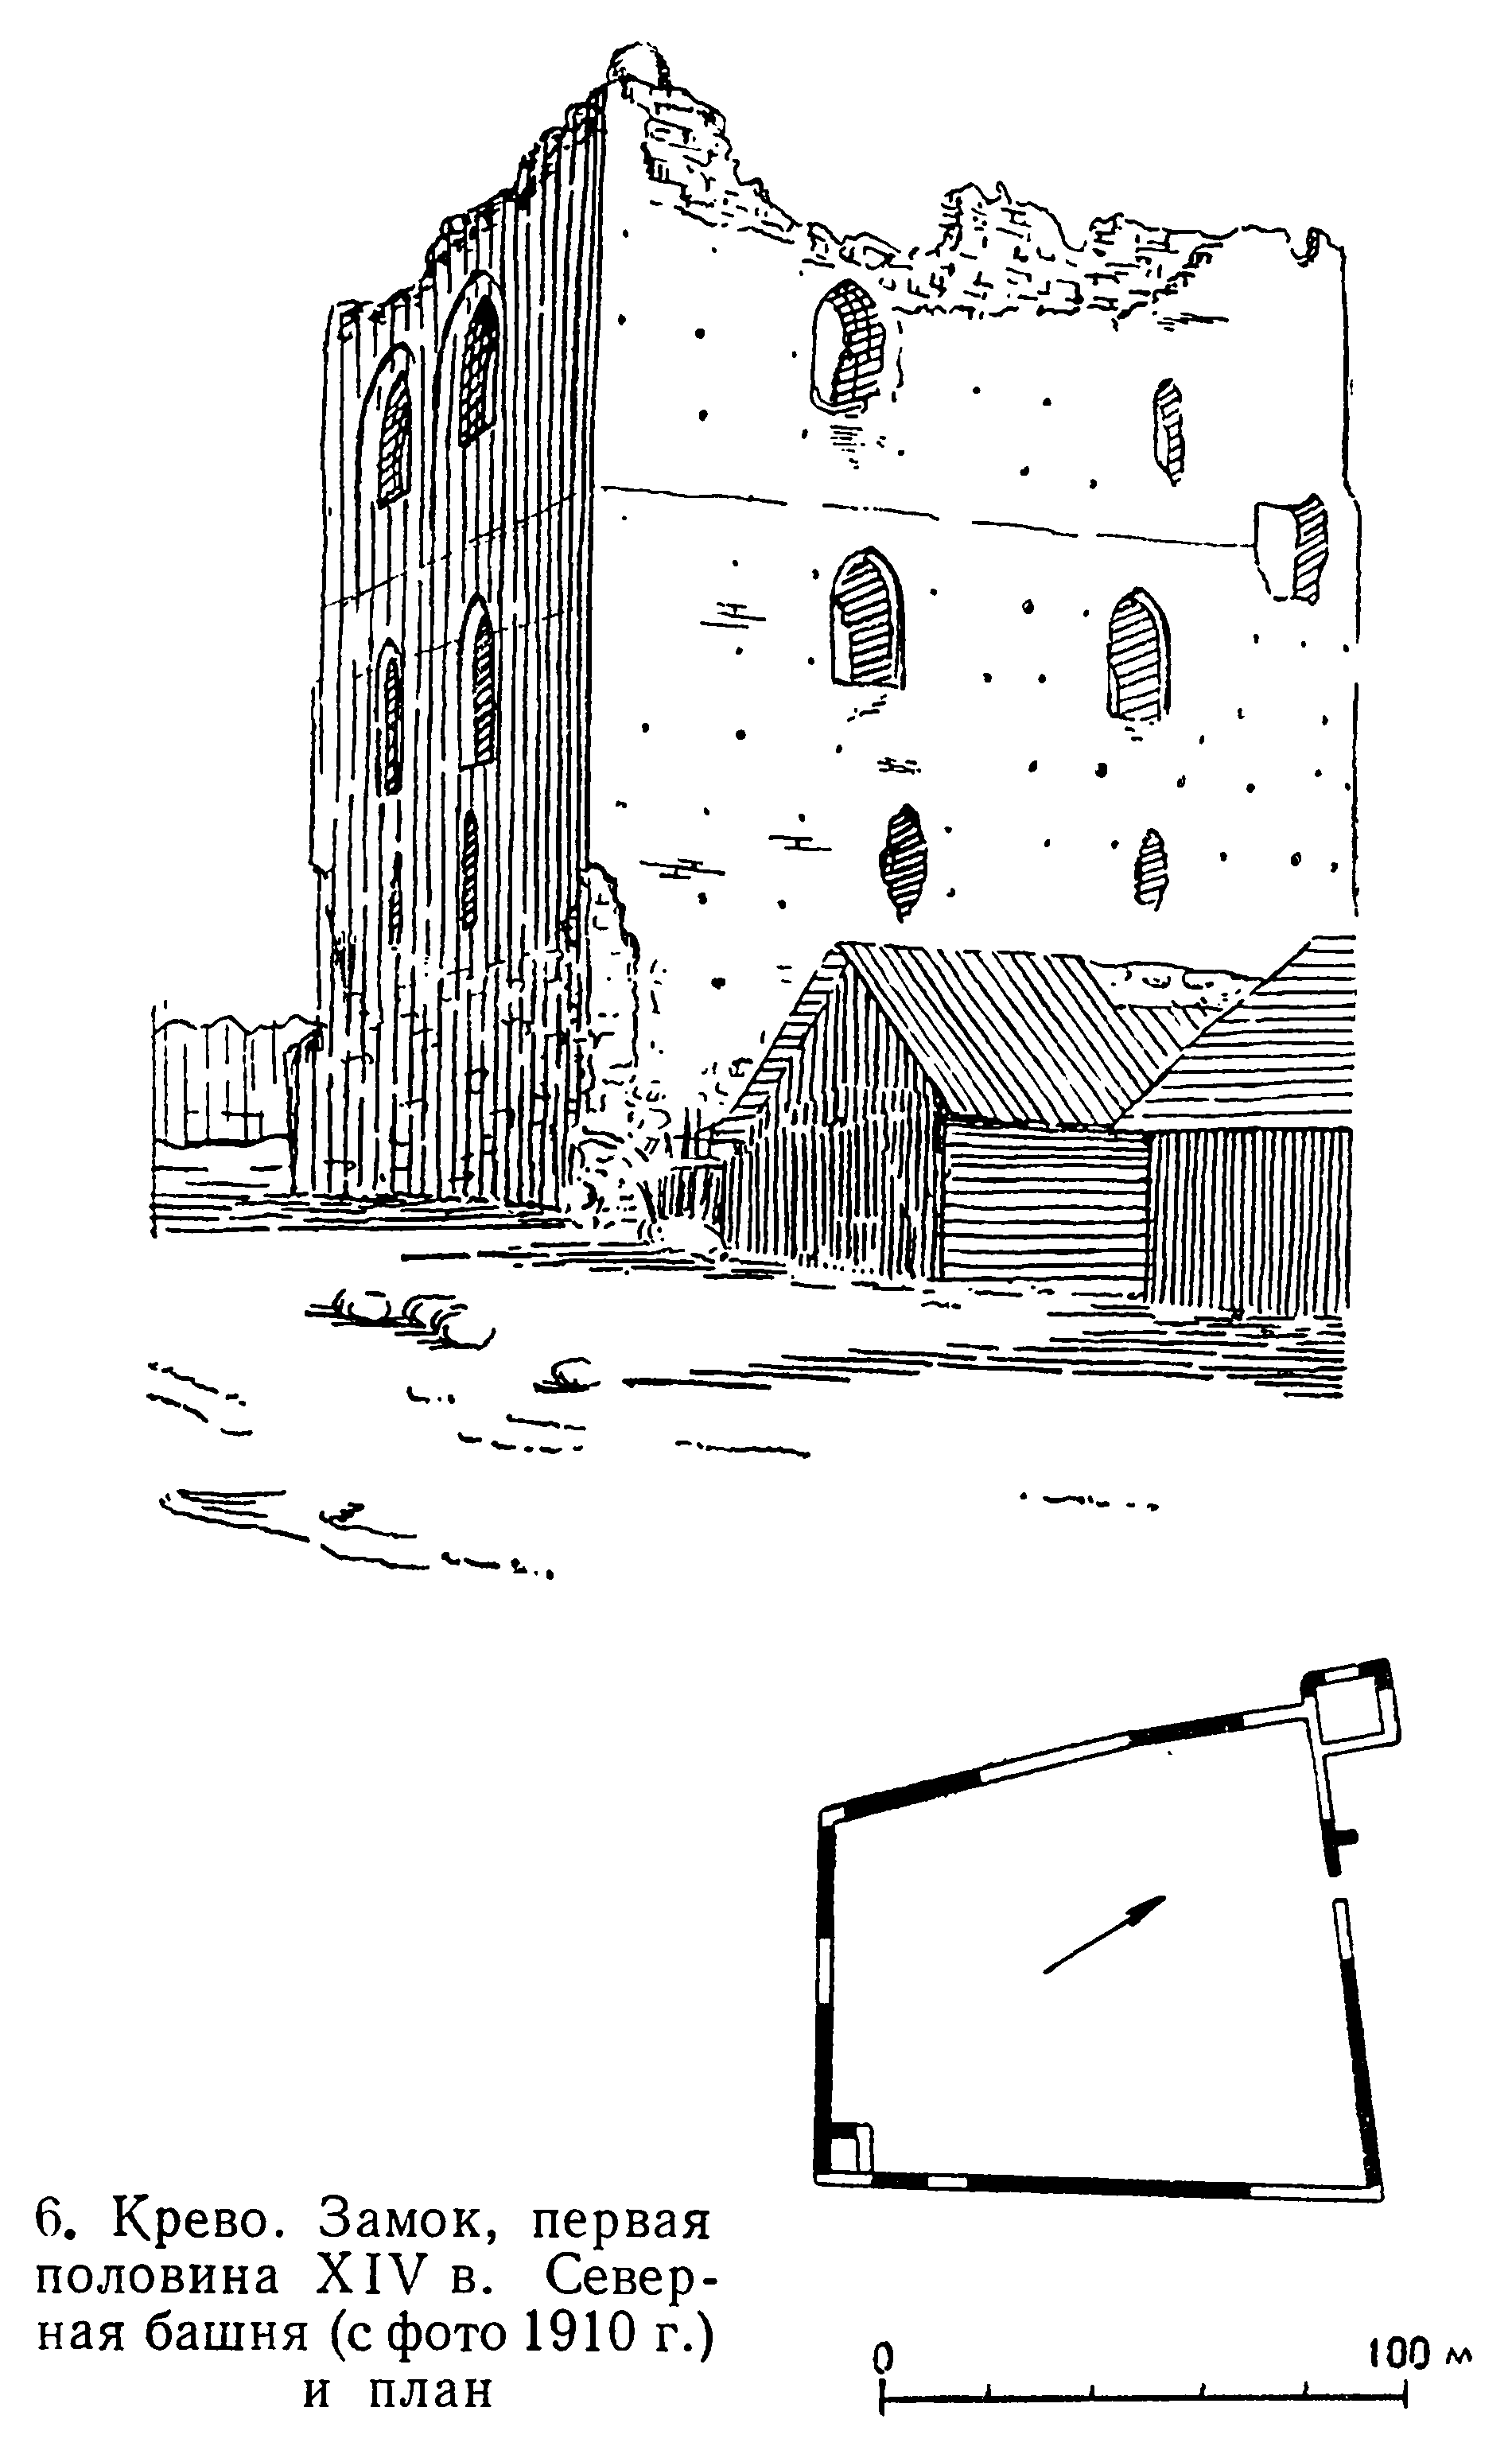 6. Крево. Замок, первая половина XIV в. Северная башня (с фото 1910 г.) и план